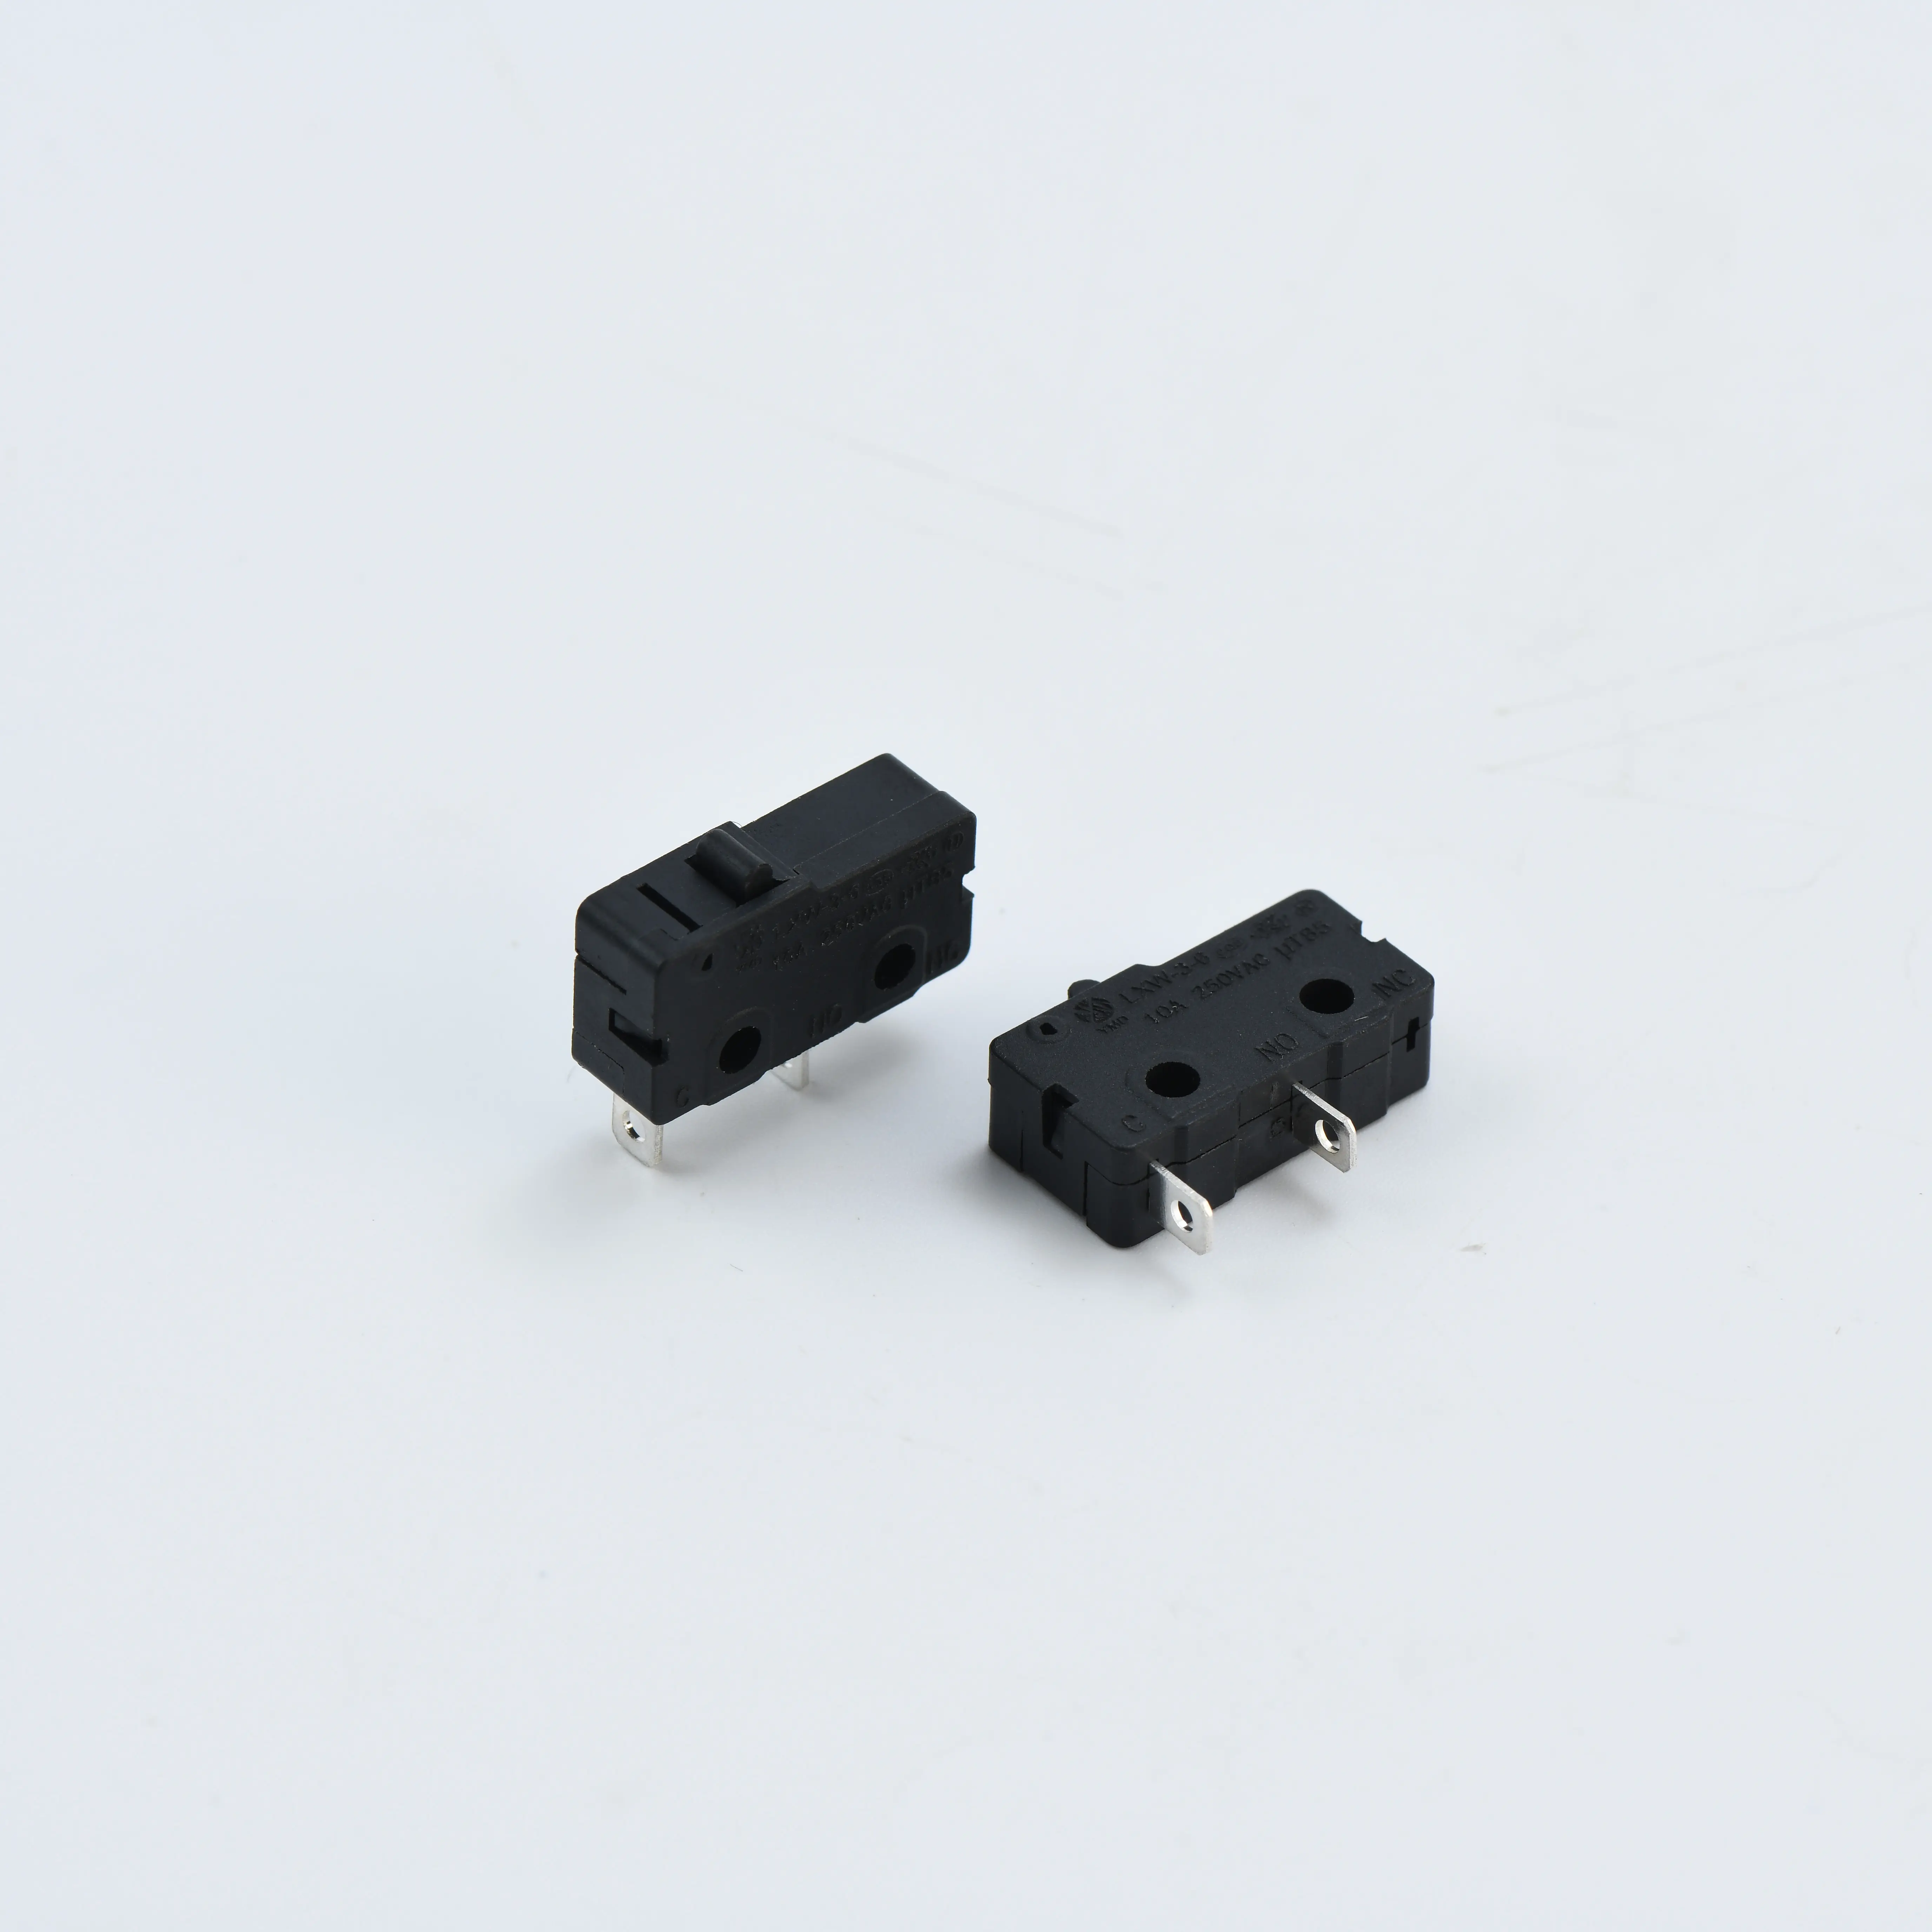 マイクロスイッチ5A/10A電気製品カスタマイズ可能マイクロリミットスイッチ工場ベストセラー